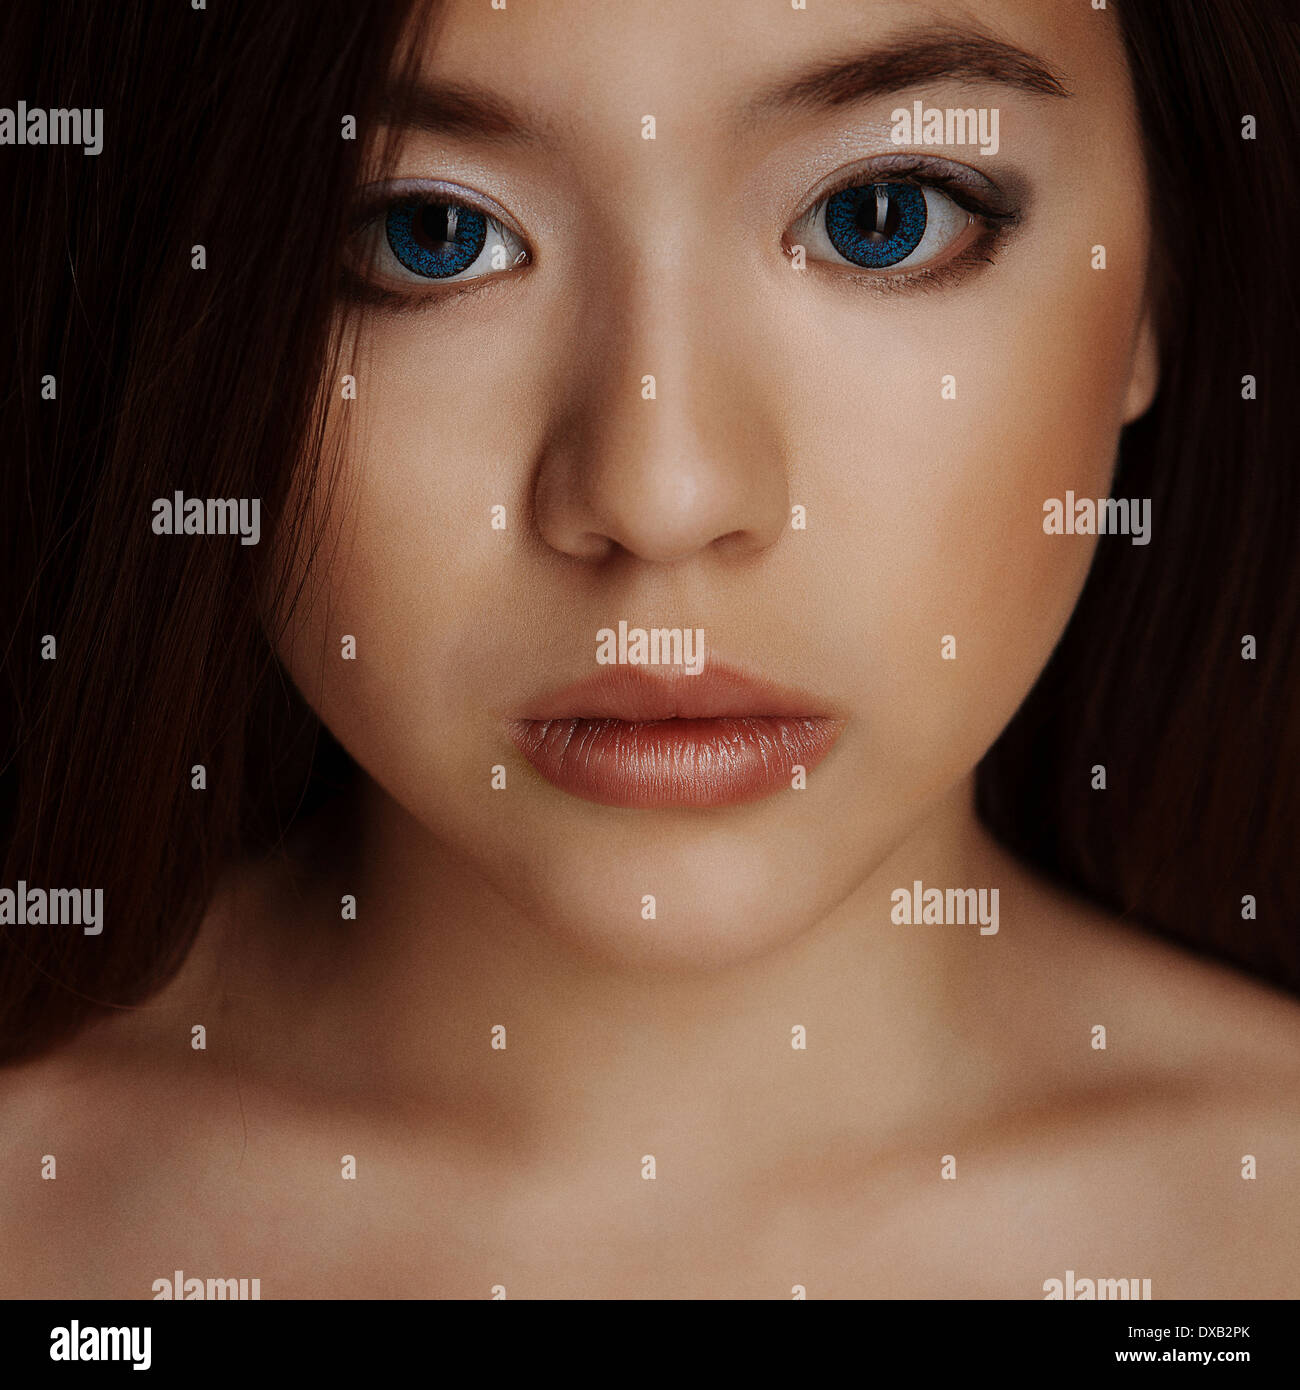 Girl portrait asiatique avec de grandes lèvres et yeux bleus Banque D'Images